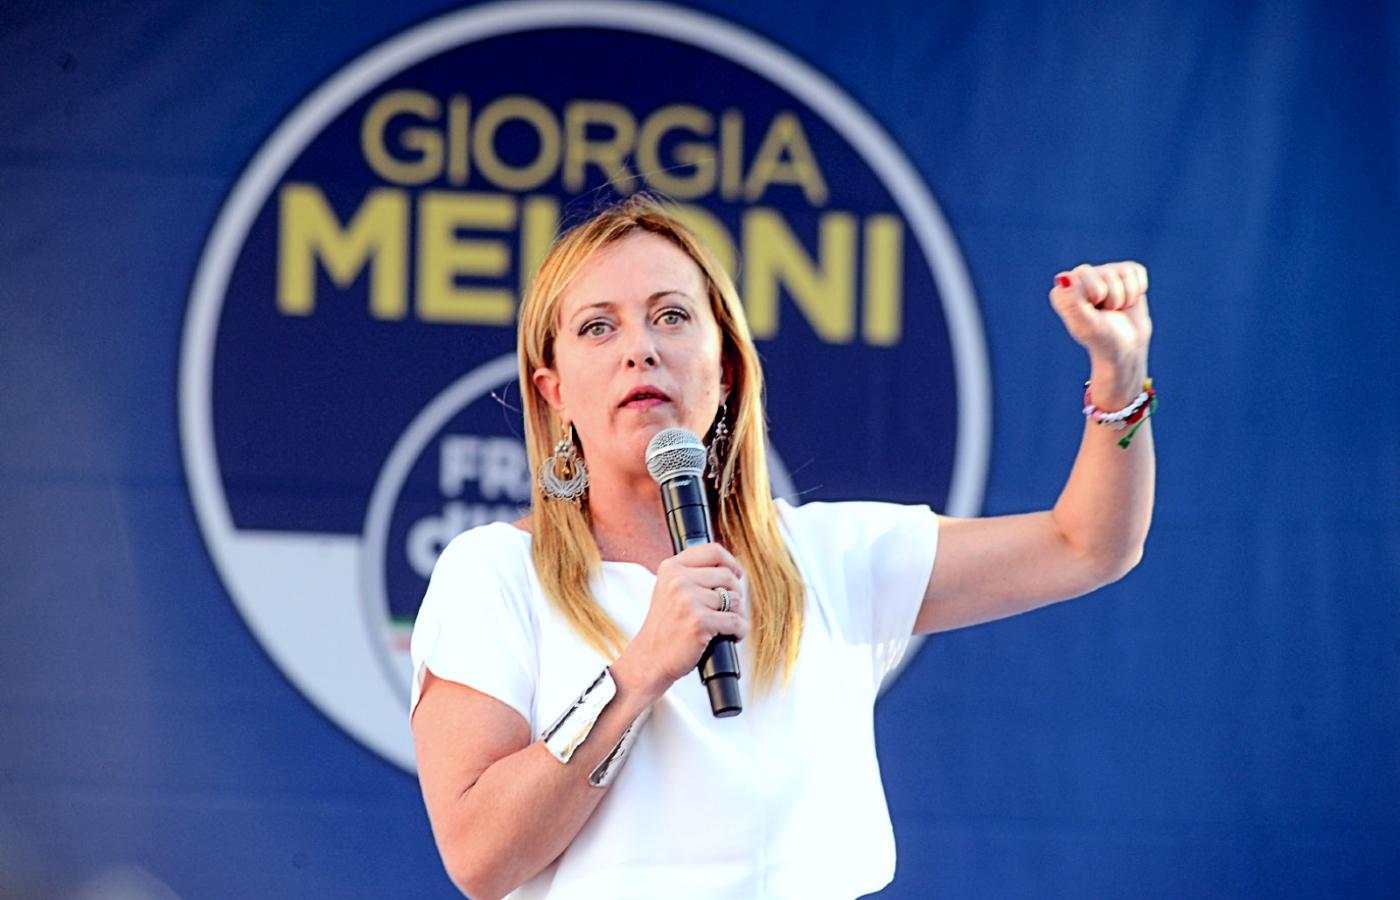 Giorgia Meloni zostanie najpewniej szefową nowego włoskiego rządu i będzie pierwszą kobietą na tym stanowisku od utworzenia republiki po II wojnie światowej.